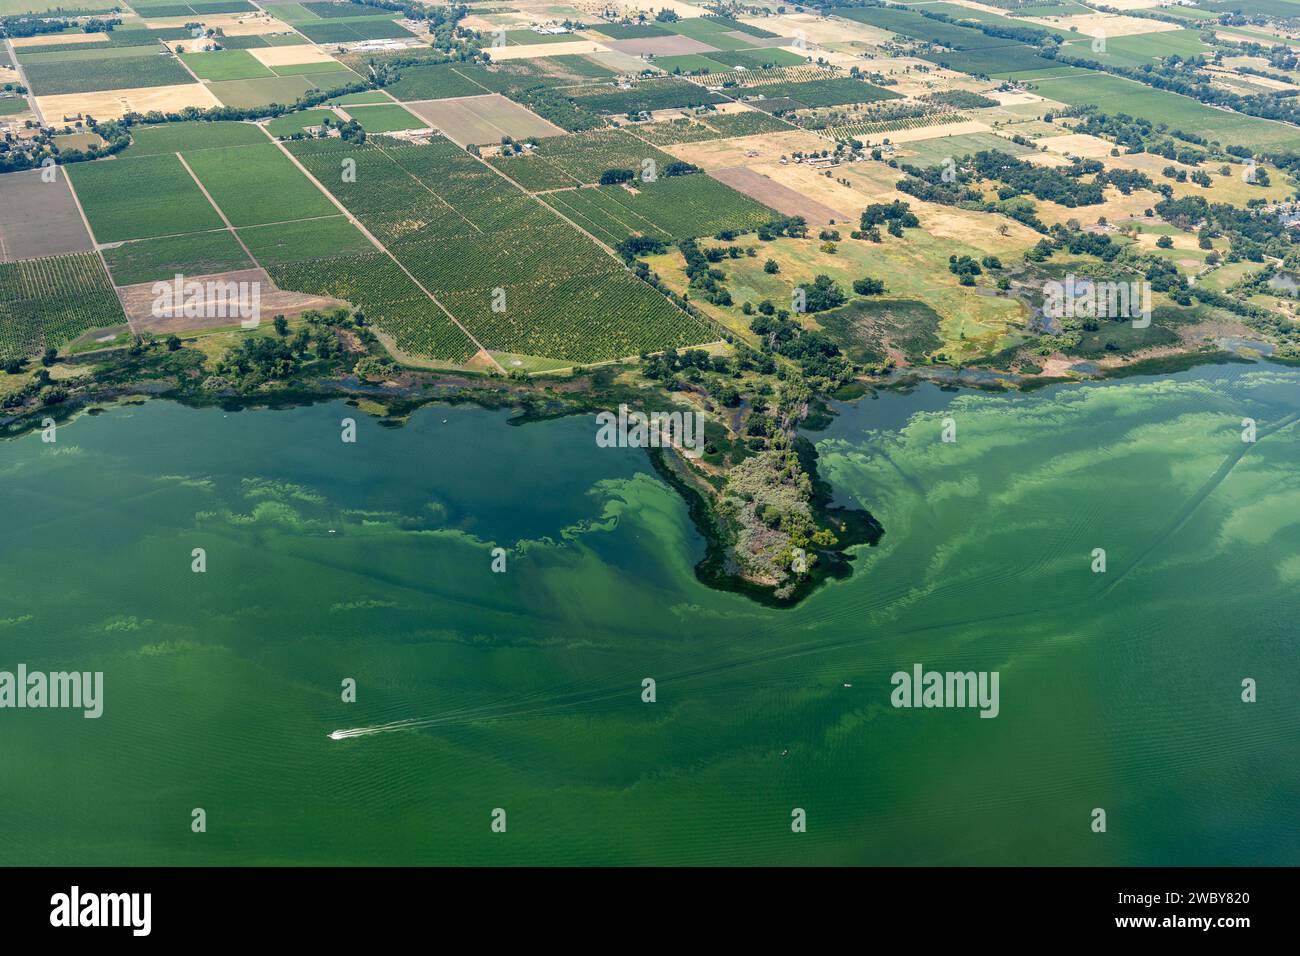 Vista aerea delle acque verdi inquinate del lago Clear e degli effetti ambientali del deflusso agricolo che causa la fioritura delle alghe Foto Stock